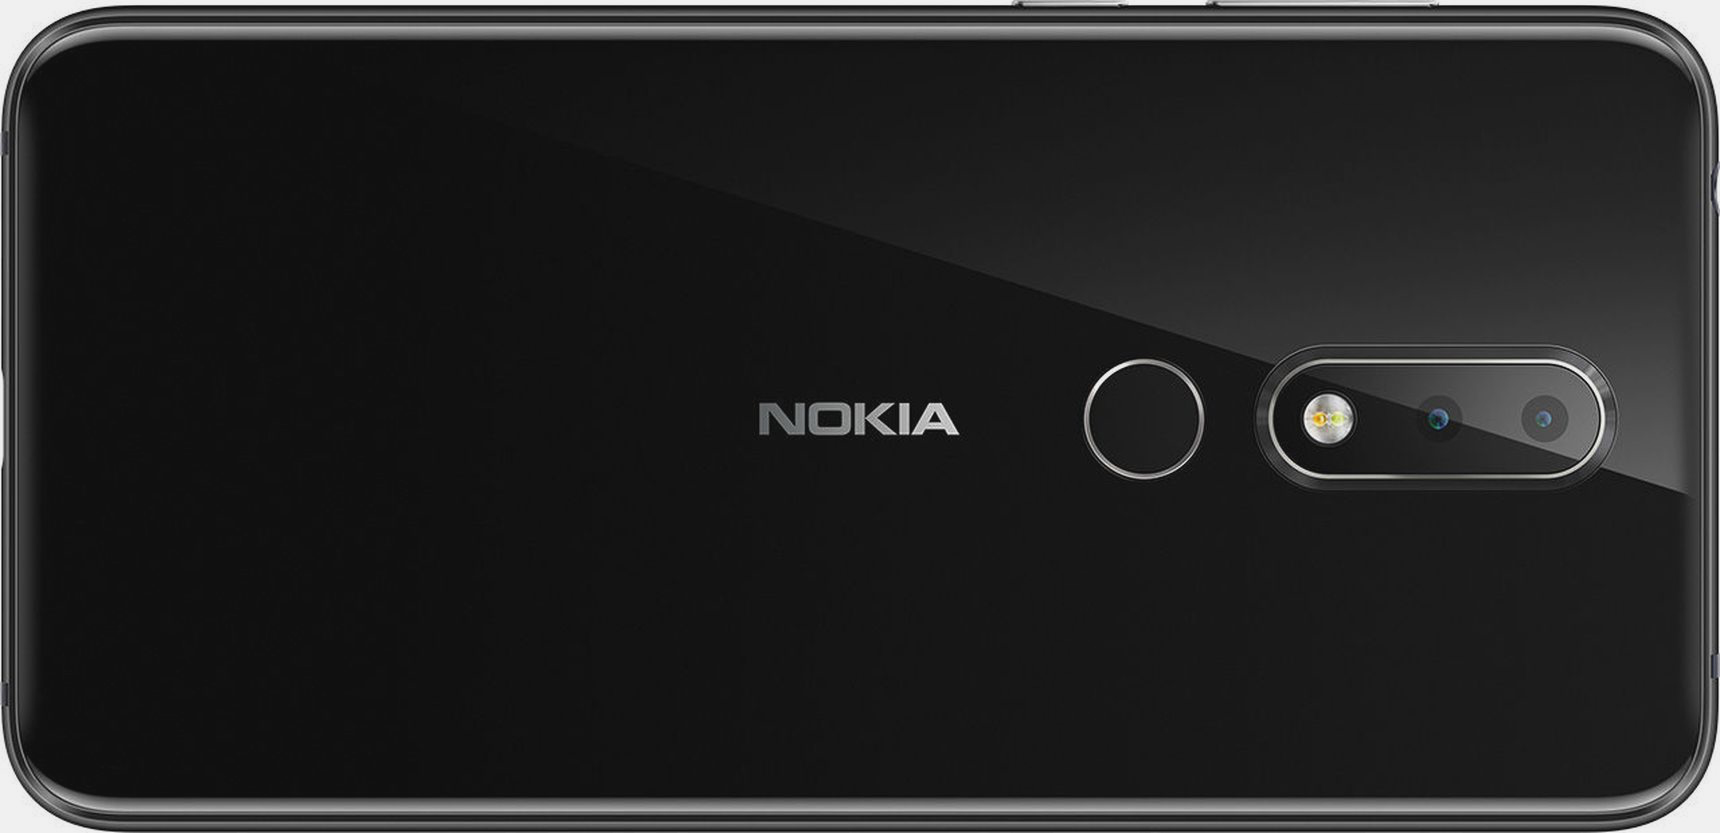 مميزات وعيوب أحدث هواتف Nokia التي أعلن عنها مؤخرًا Nokia X6